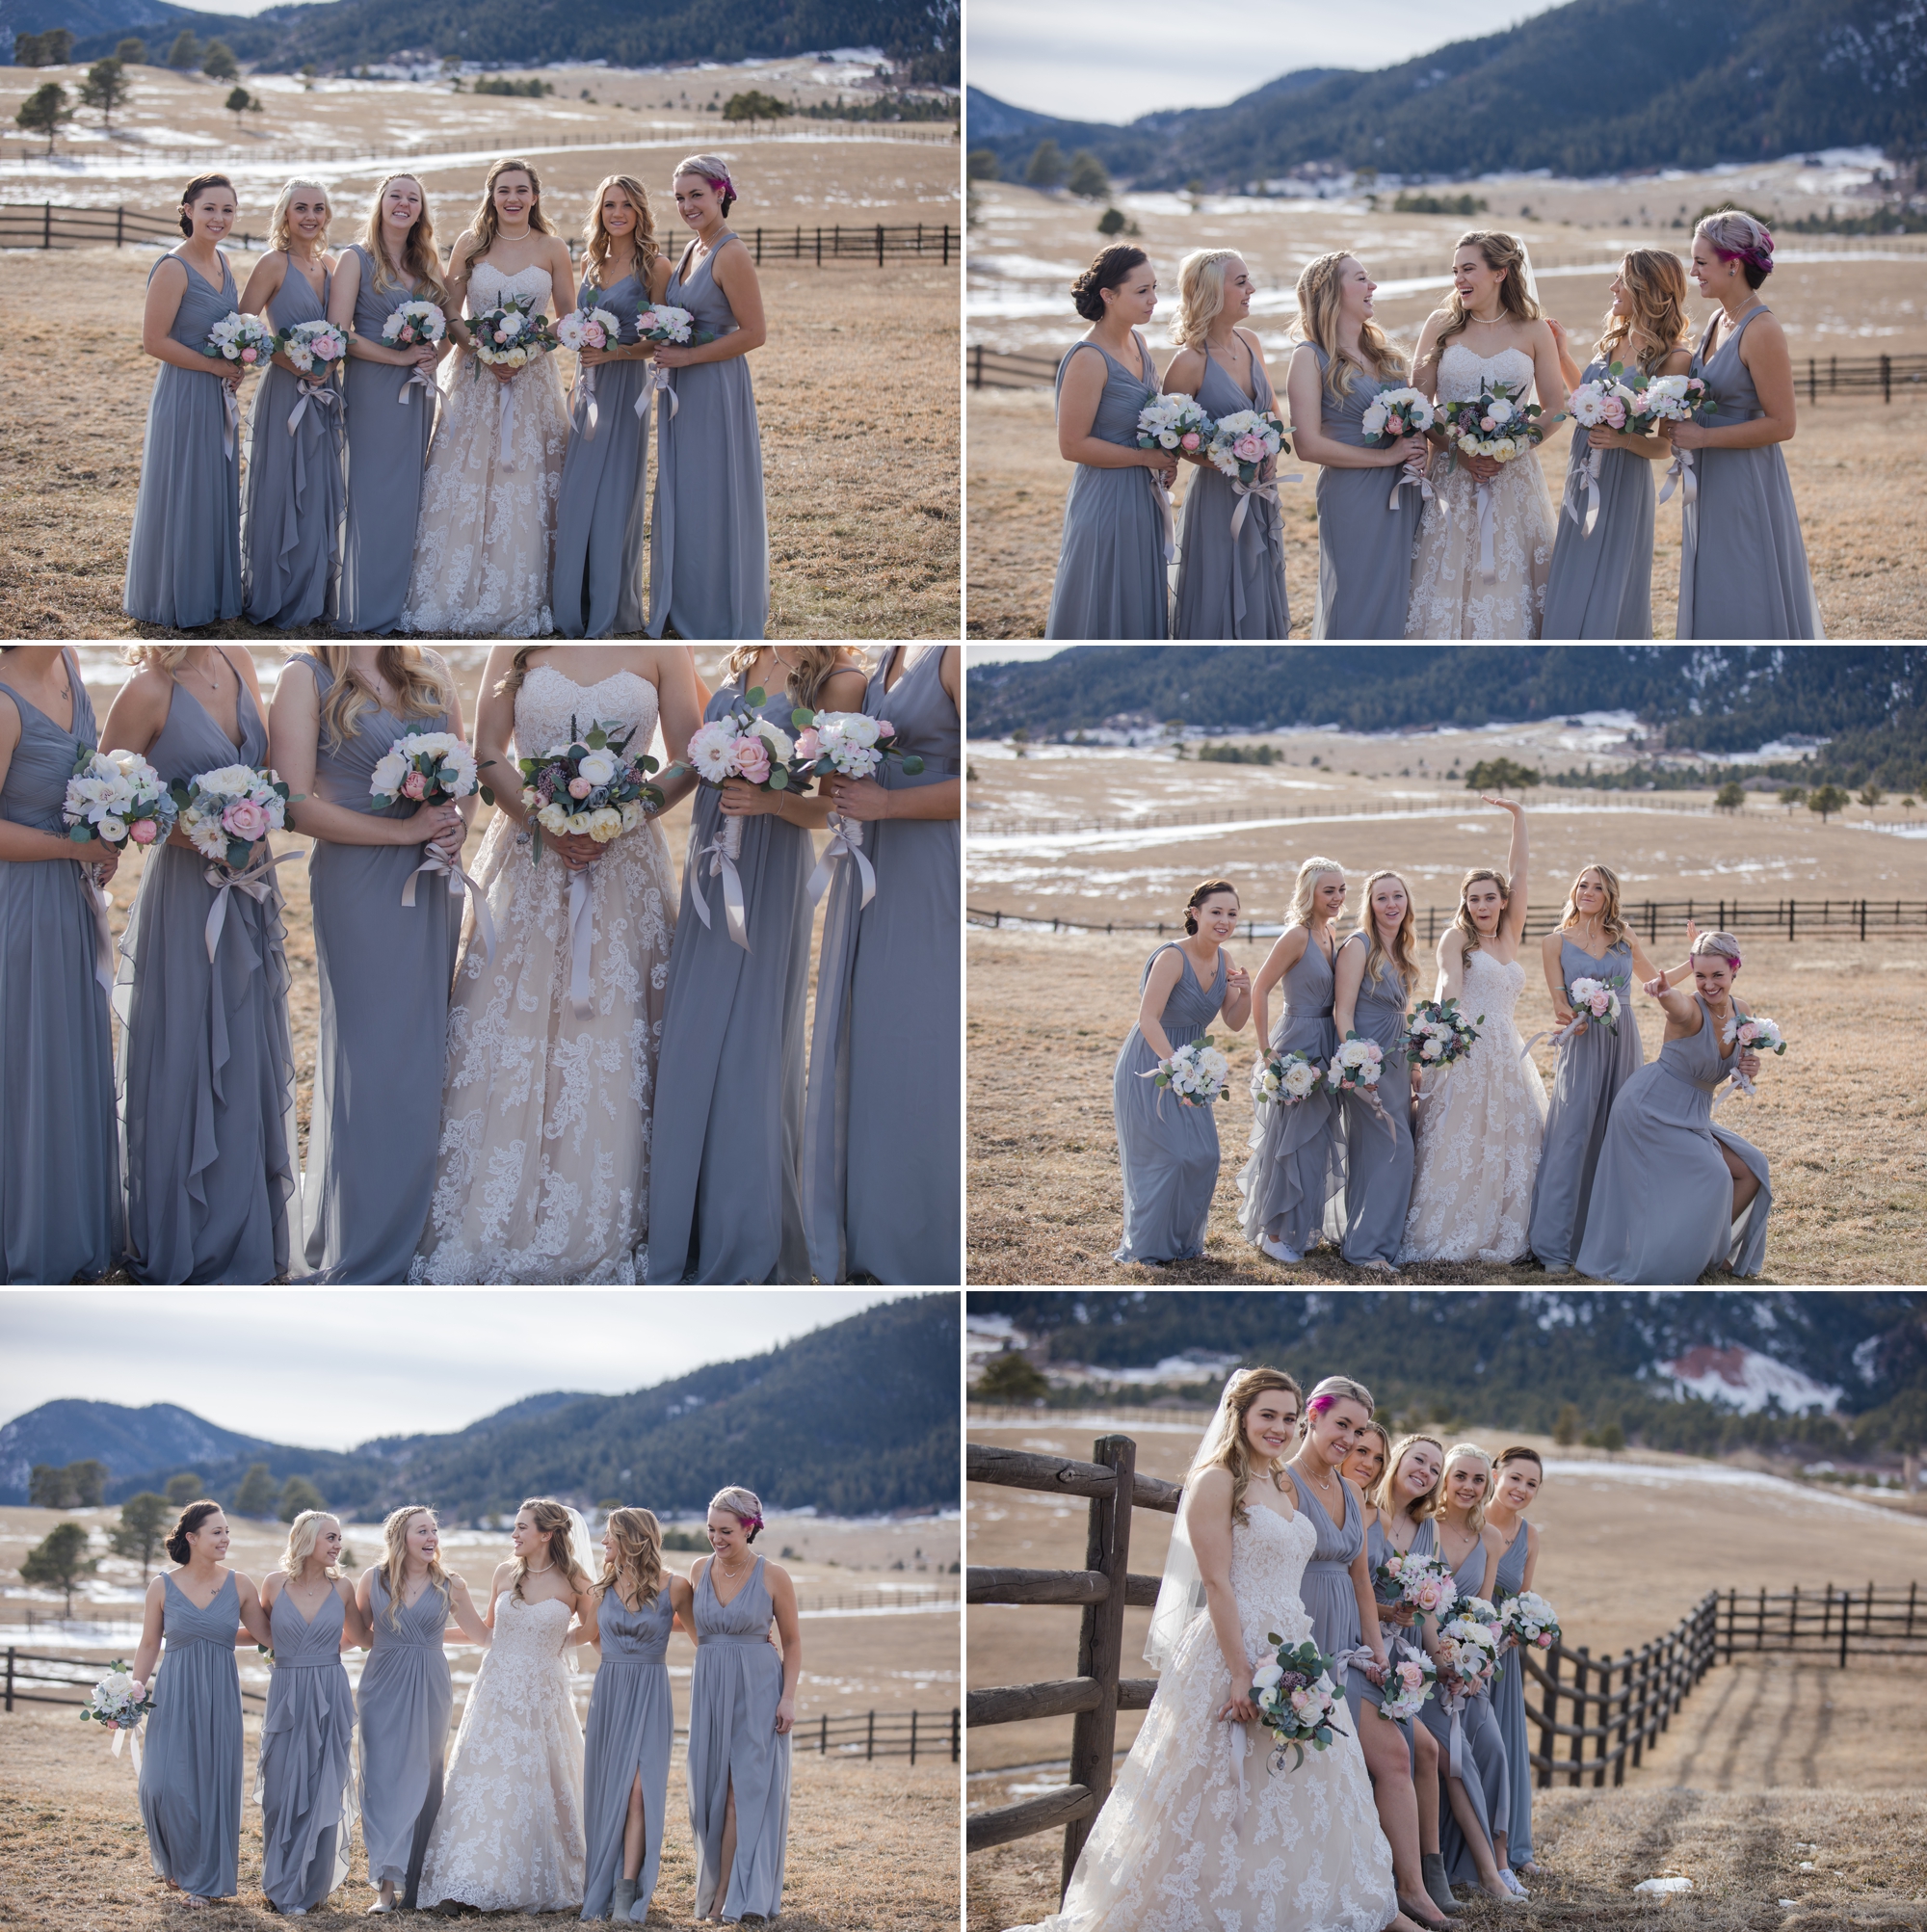 Bridal party at outdoor winter wedding in Colorado